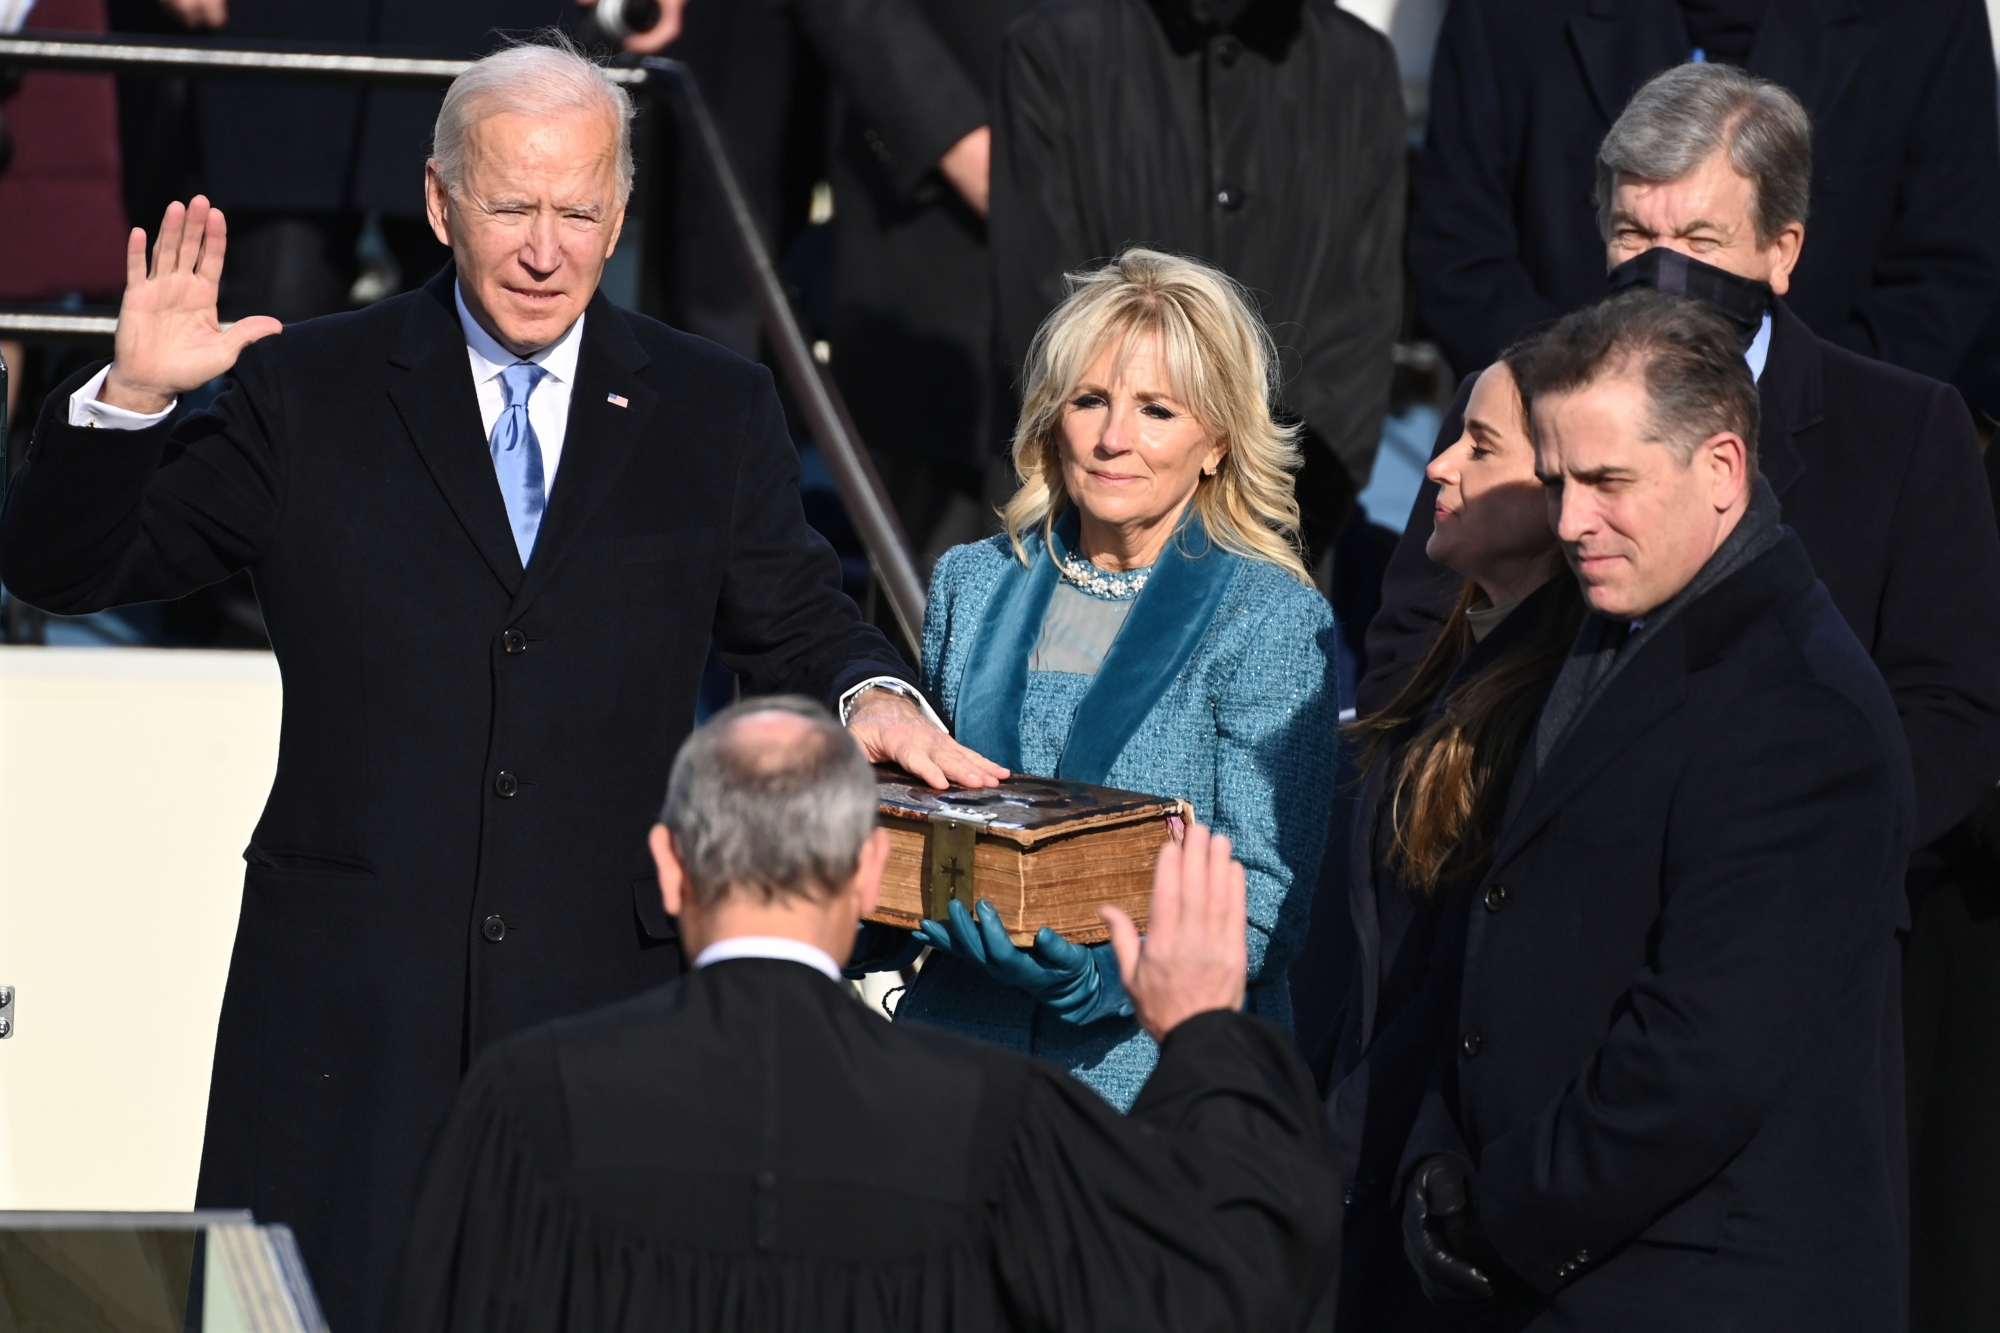 Accompagné par son épouse, Jill, Joe Biden a prêté serment à 11h48 à Washington (17h48 en Suisse).